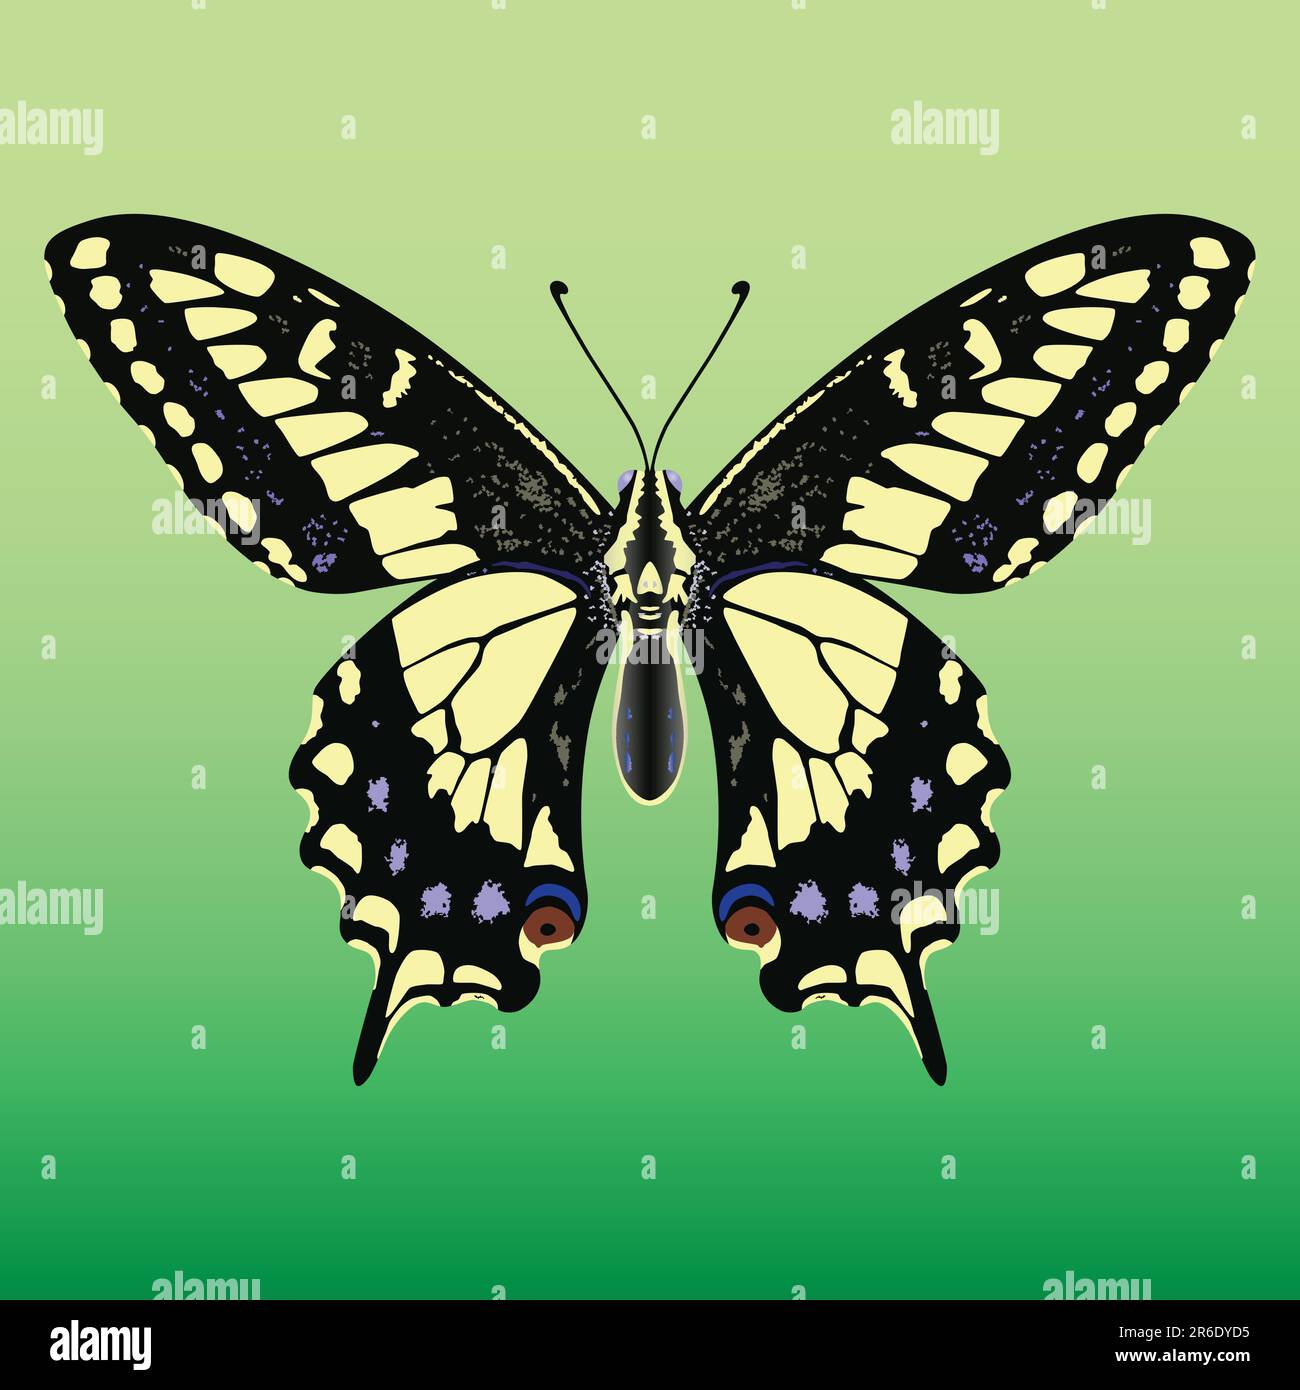 Magnifique vecteur jaune et noir papillon géant Illustration de Vecteur